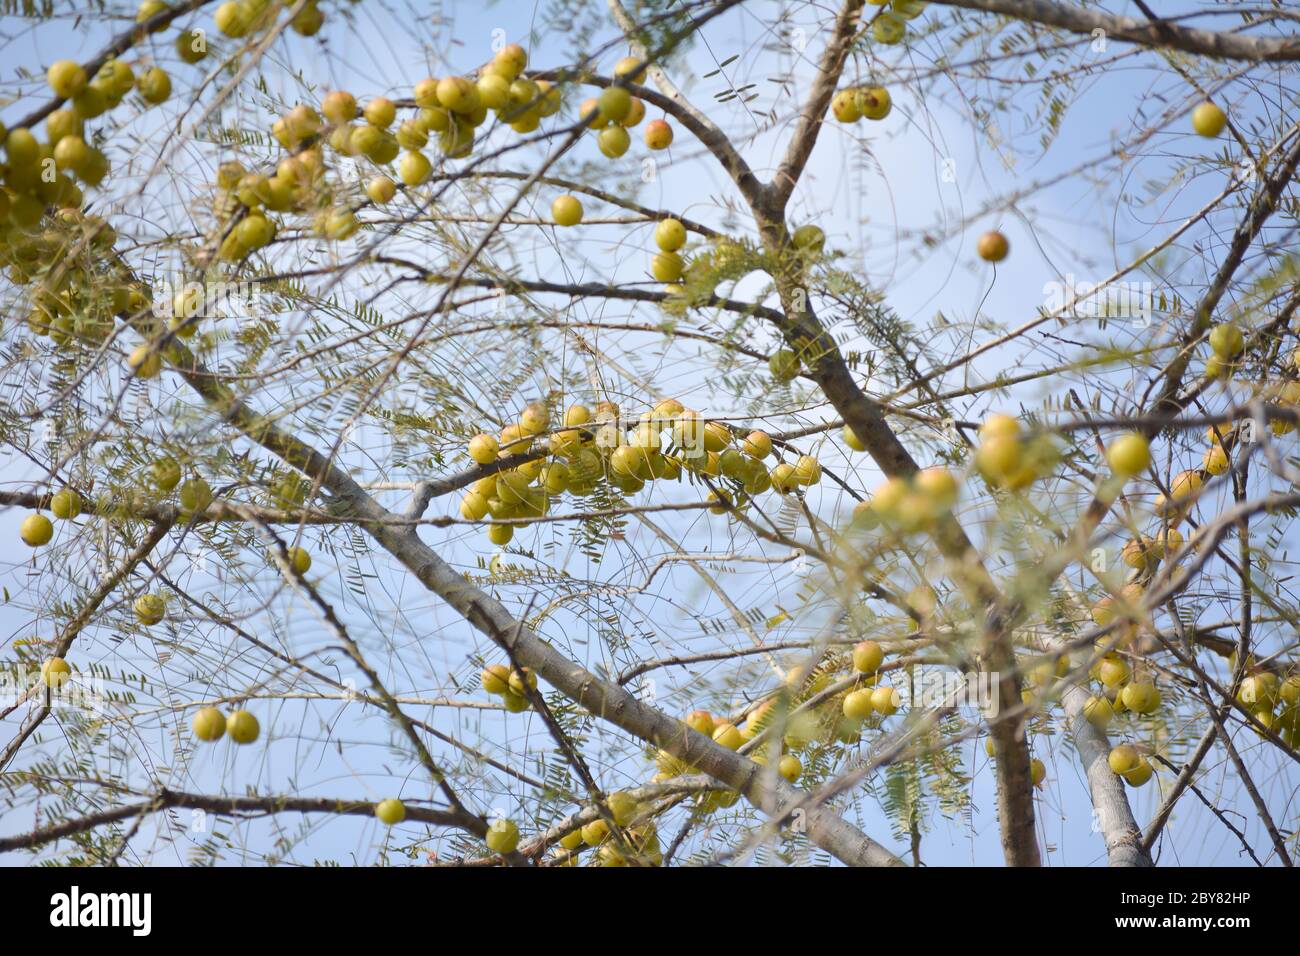 Arándanos indios o fruta amla colgando en el árbol. La arándano indio es un ingrediente esencial de los medicamentos ayurvédicos tradicionales de la India. Foto de stock